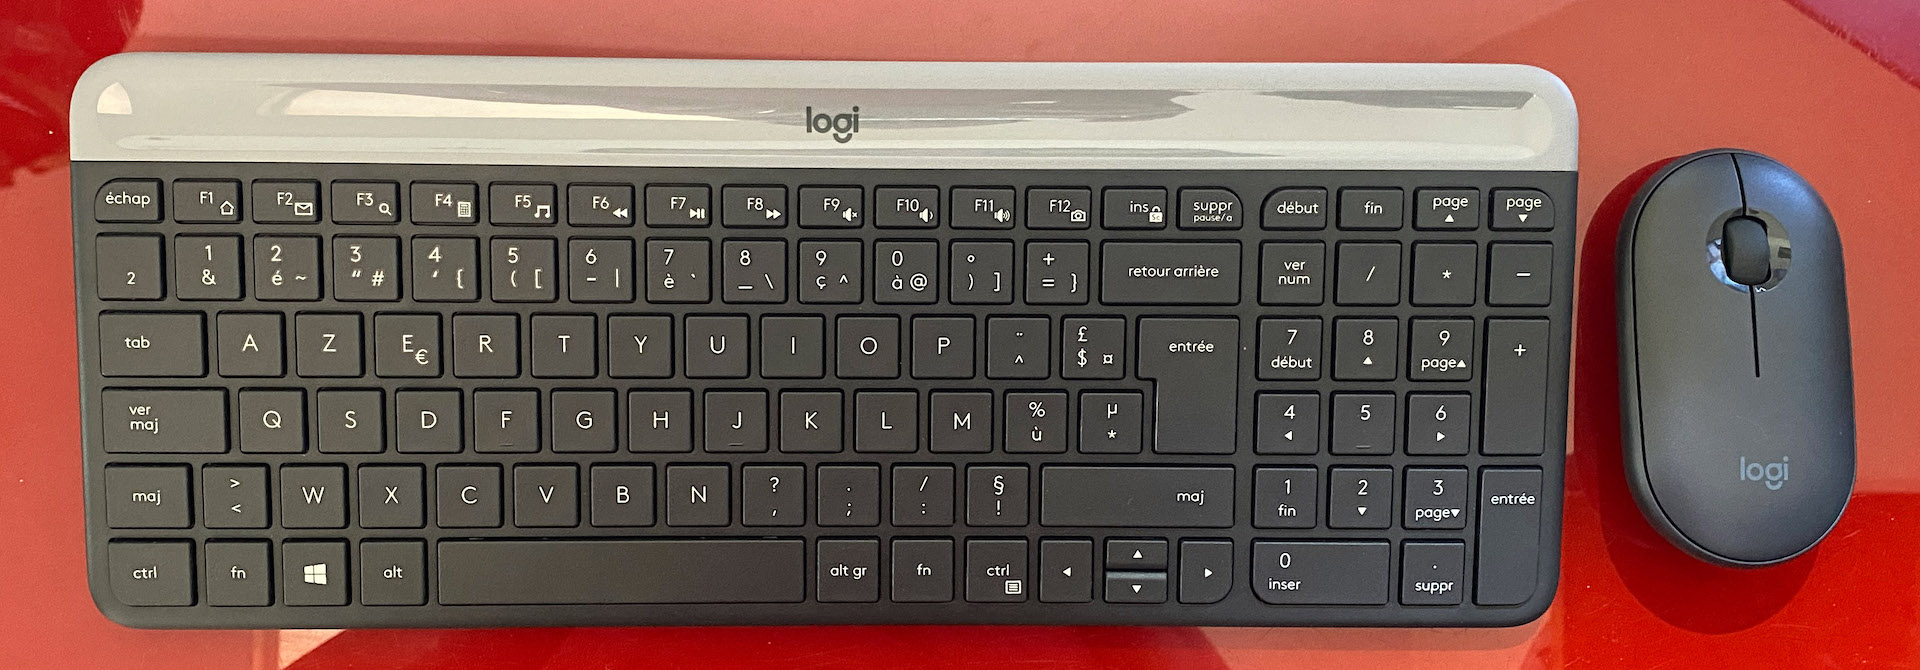 Clavier BEPO : la disposition de clavier pour rédiger plus vite - Redacteur  Blog